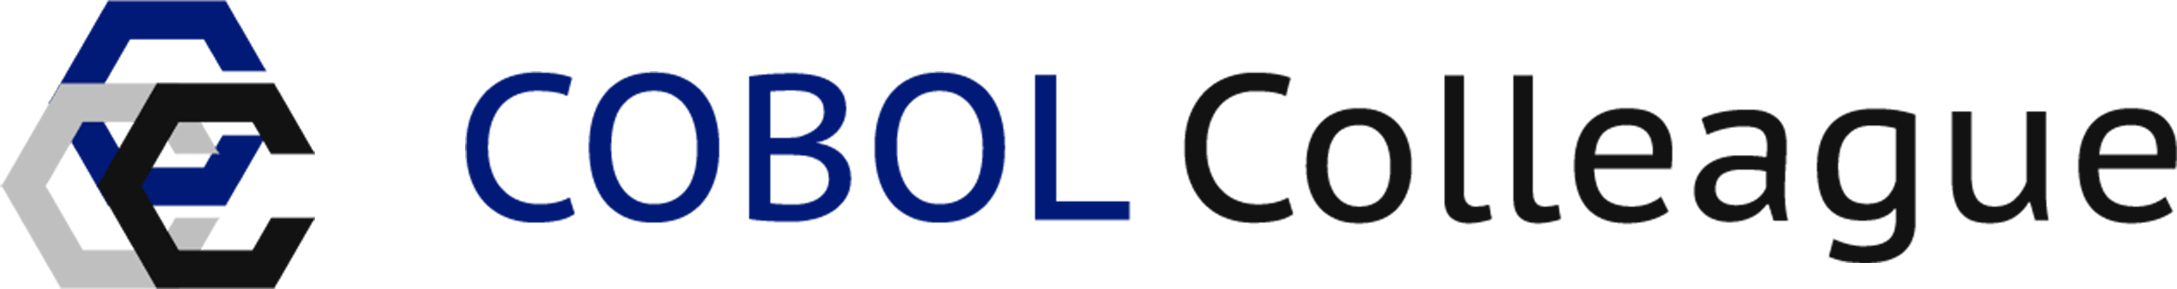 COBOL Logo - COBOL Colleague